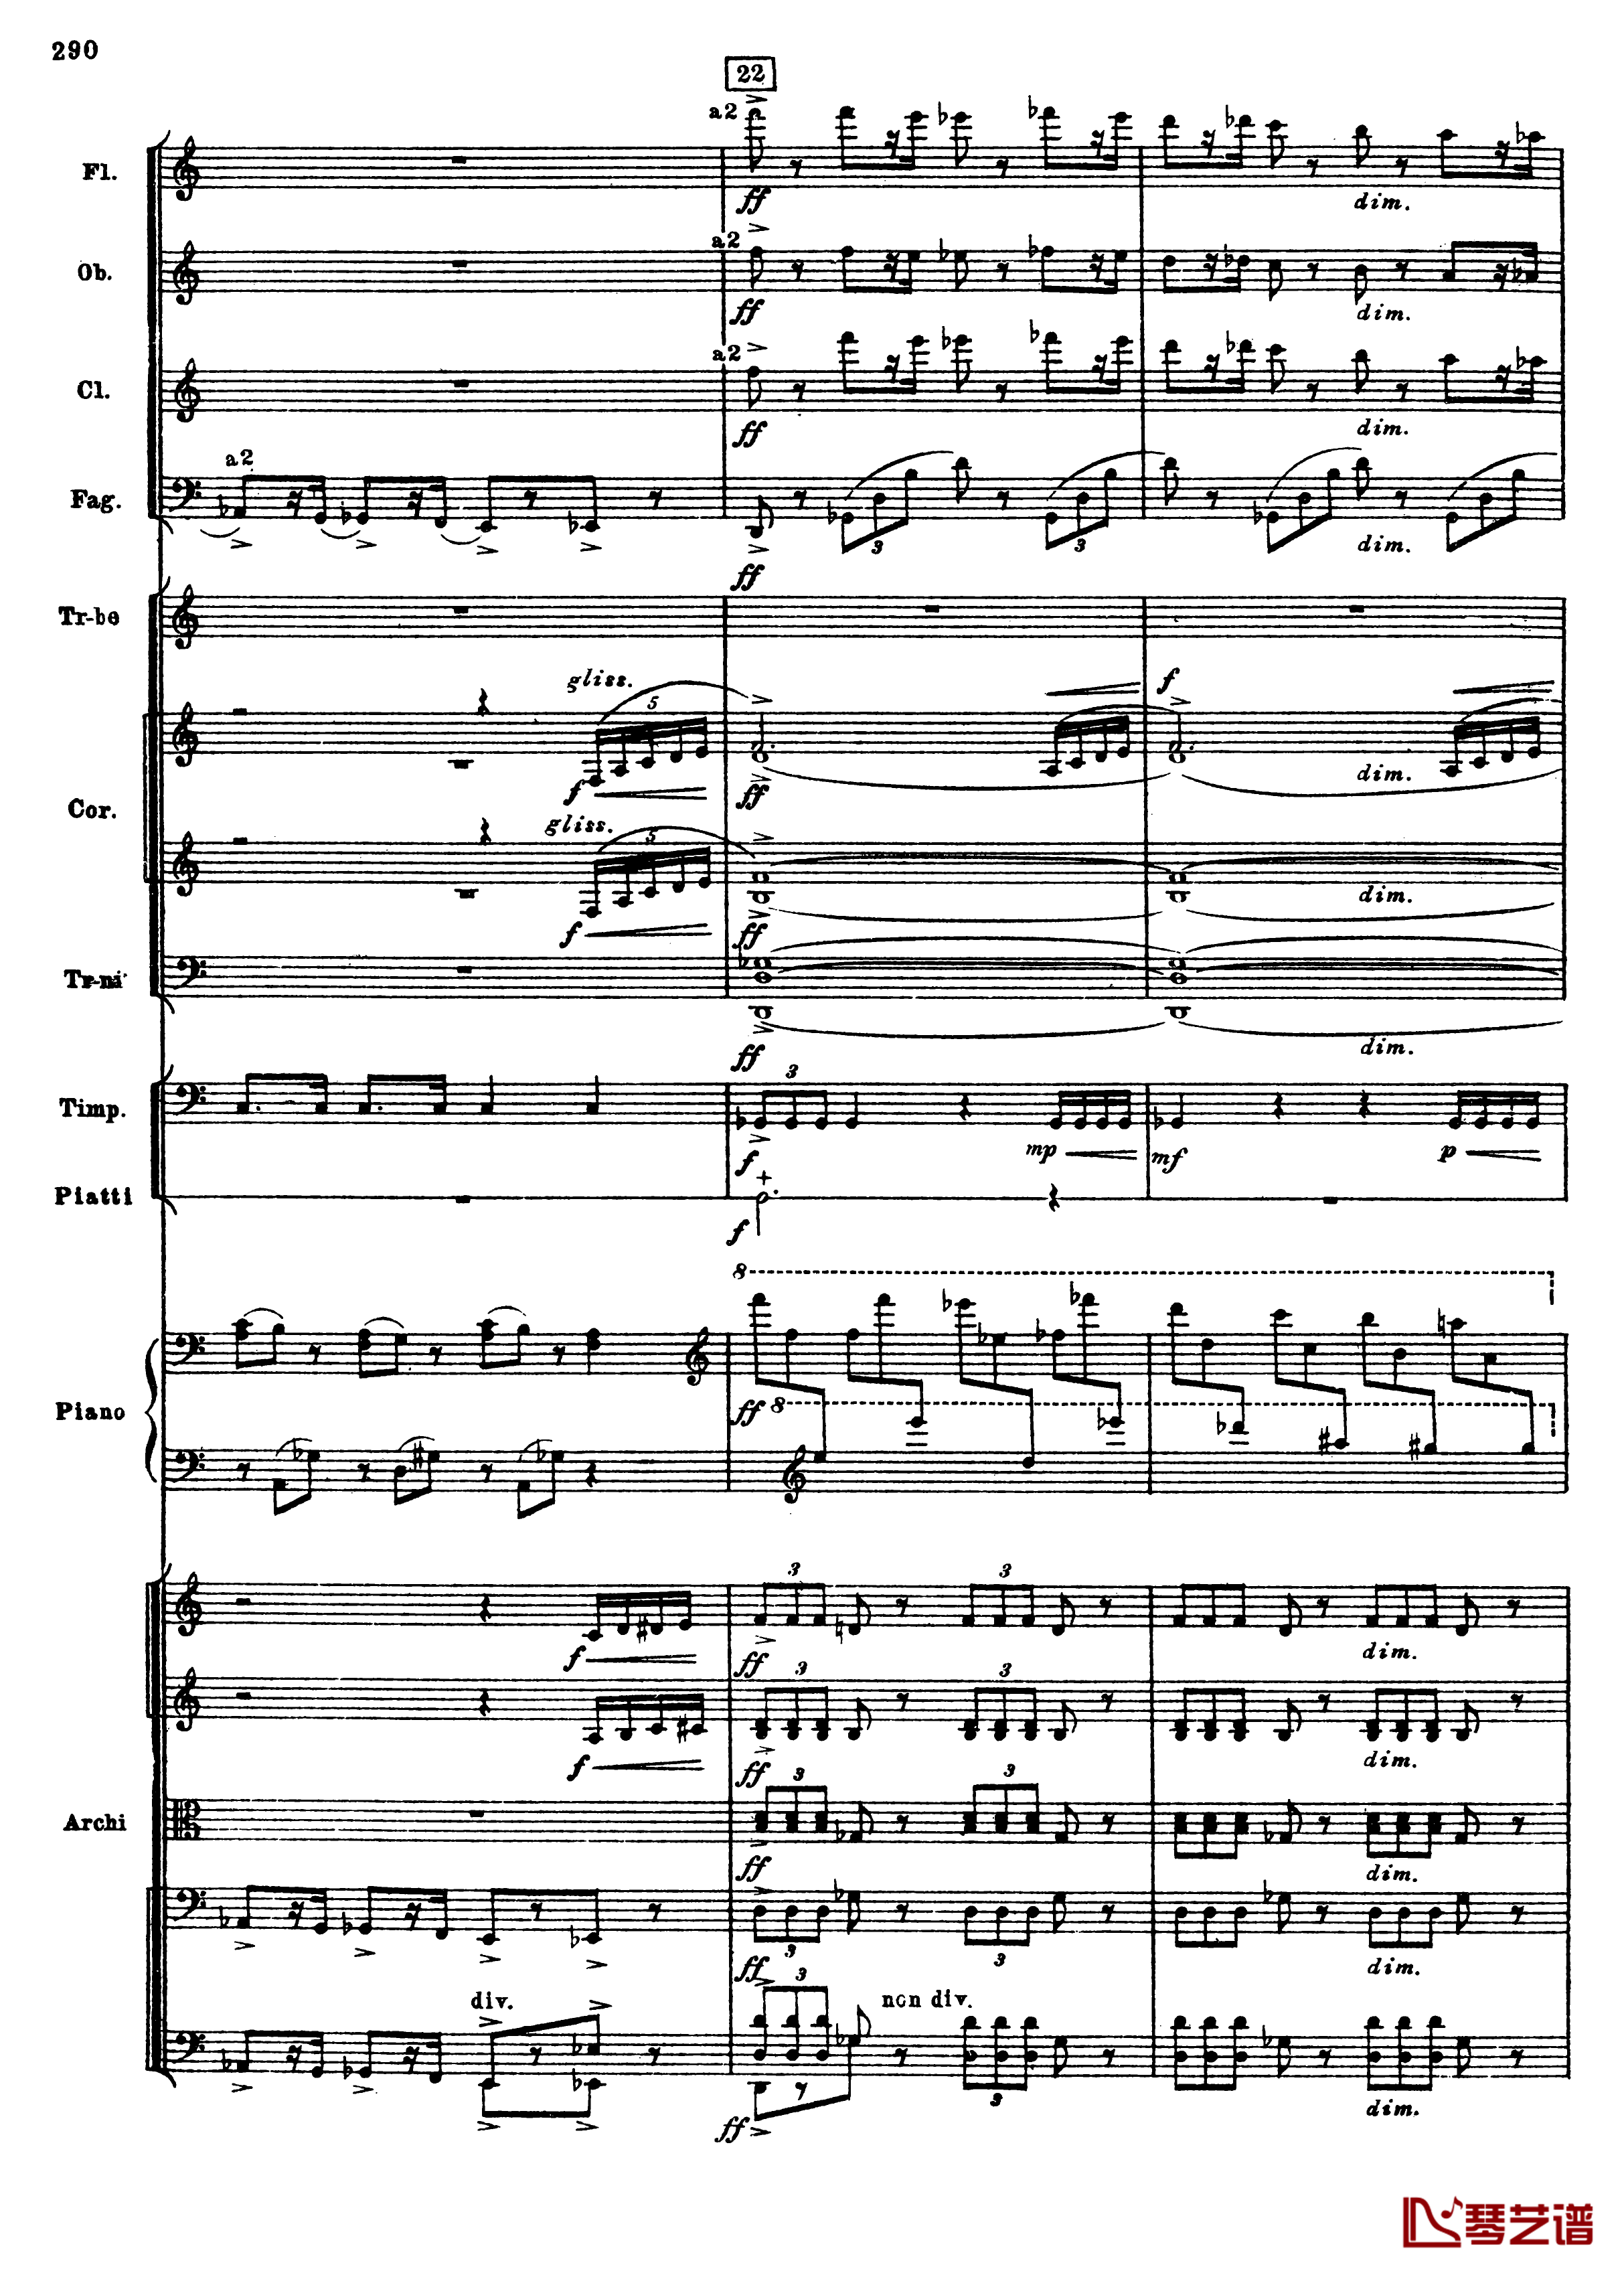 普罗科菲耶夫第三钢琴协奏曲钢琴谱-总谱-普罗科非耶夫22